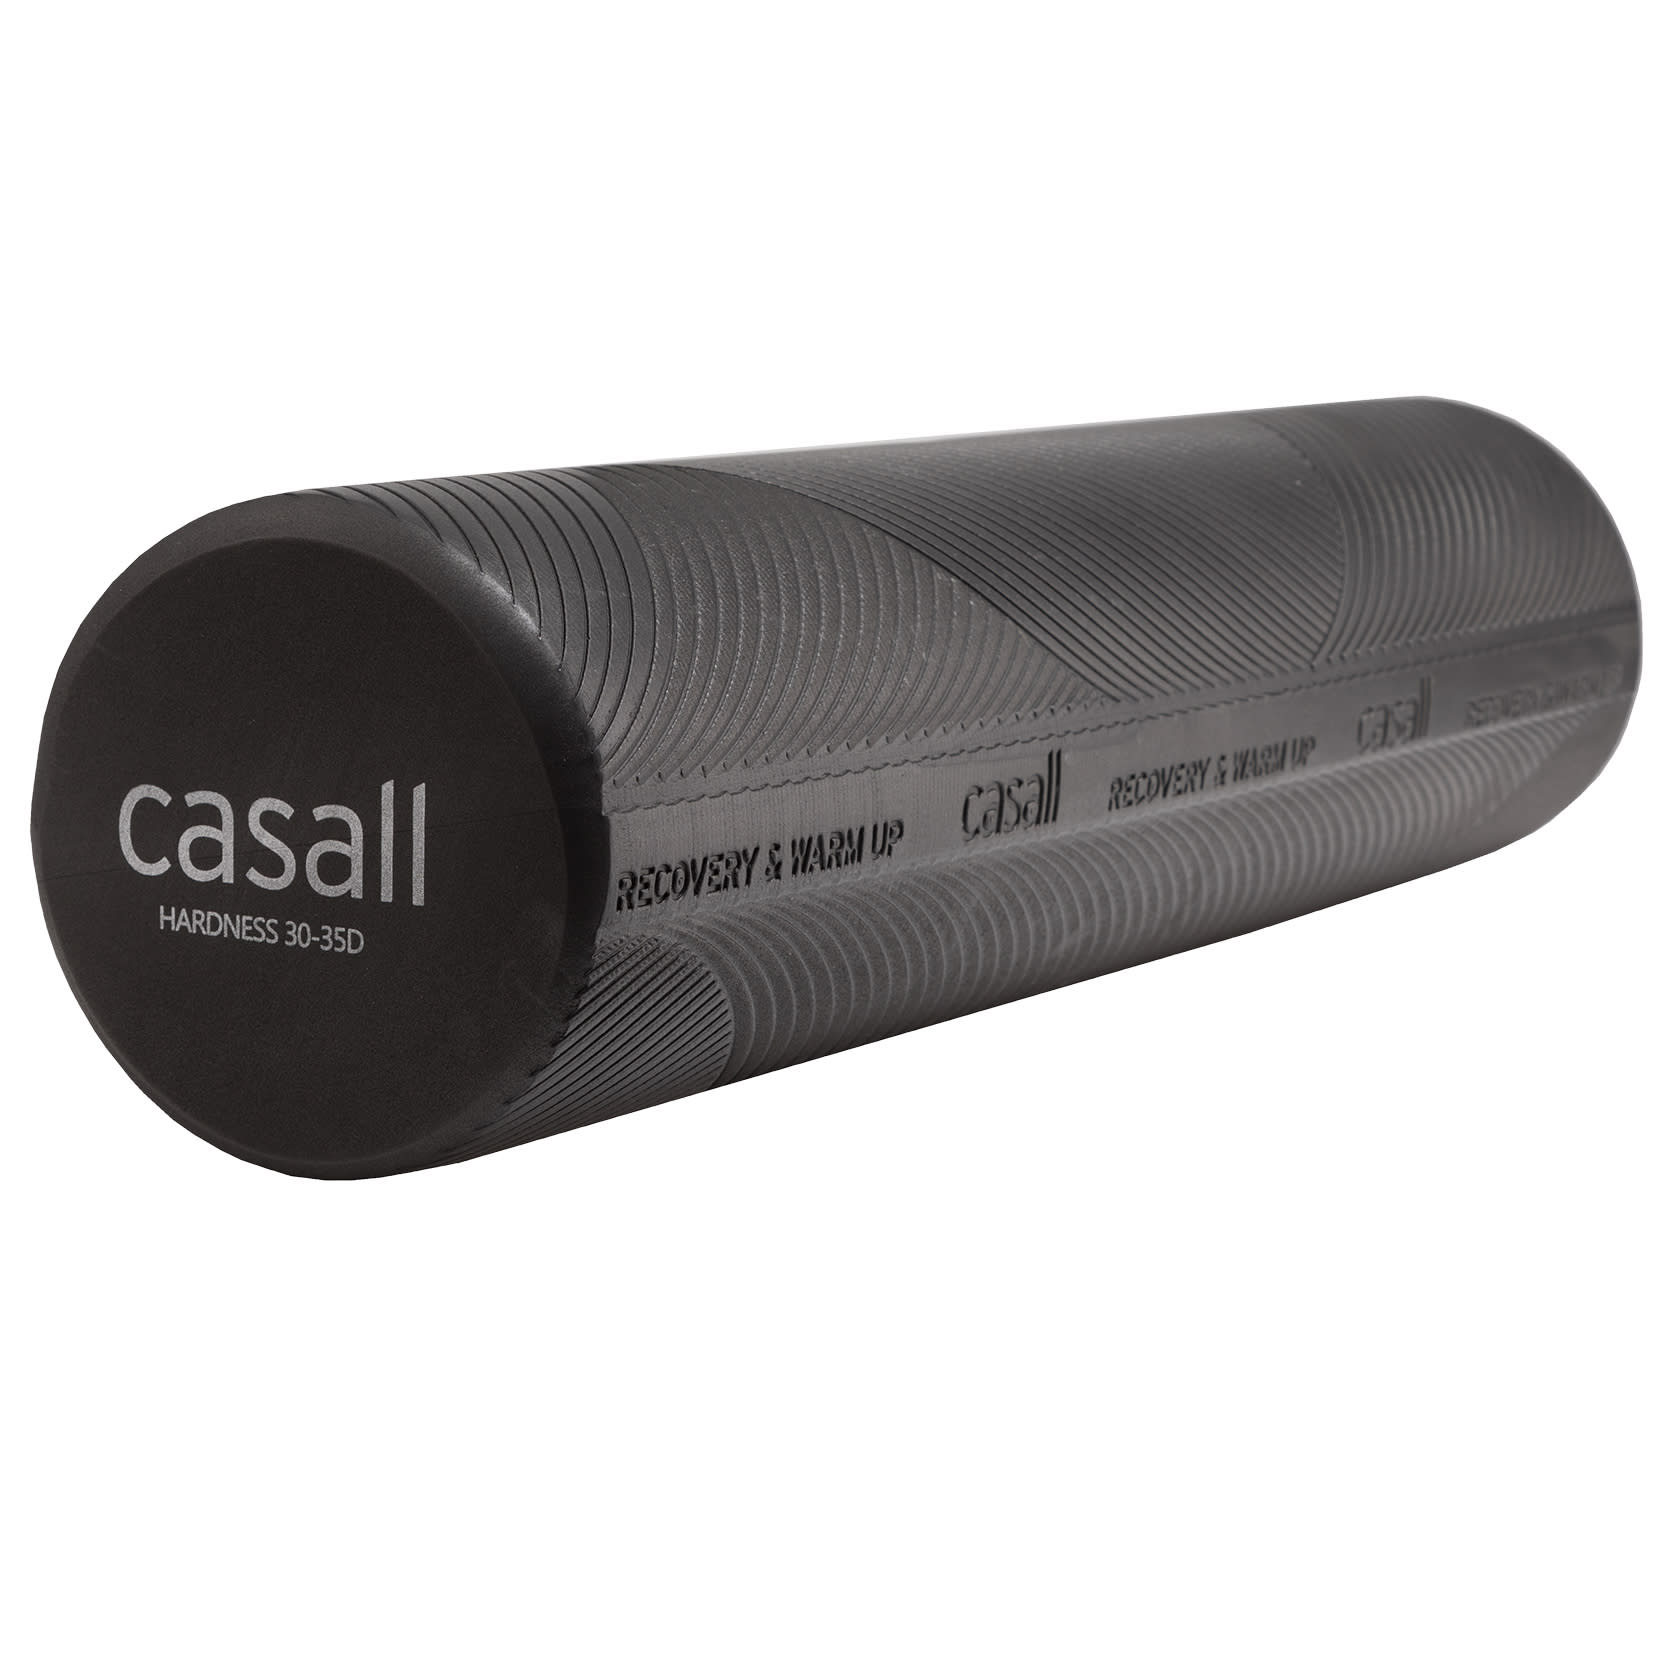 Casall Foam roll medium